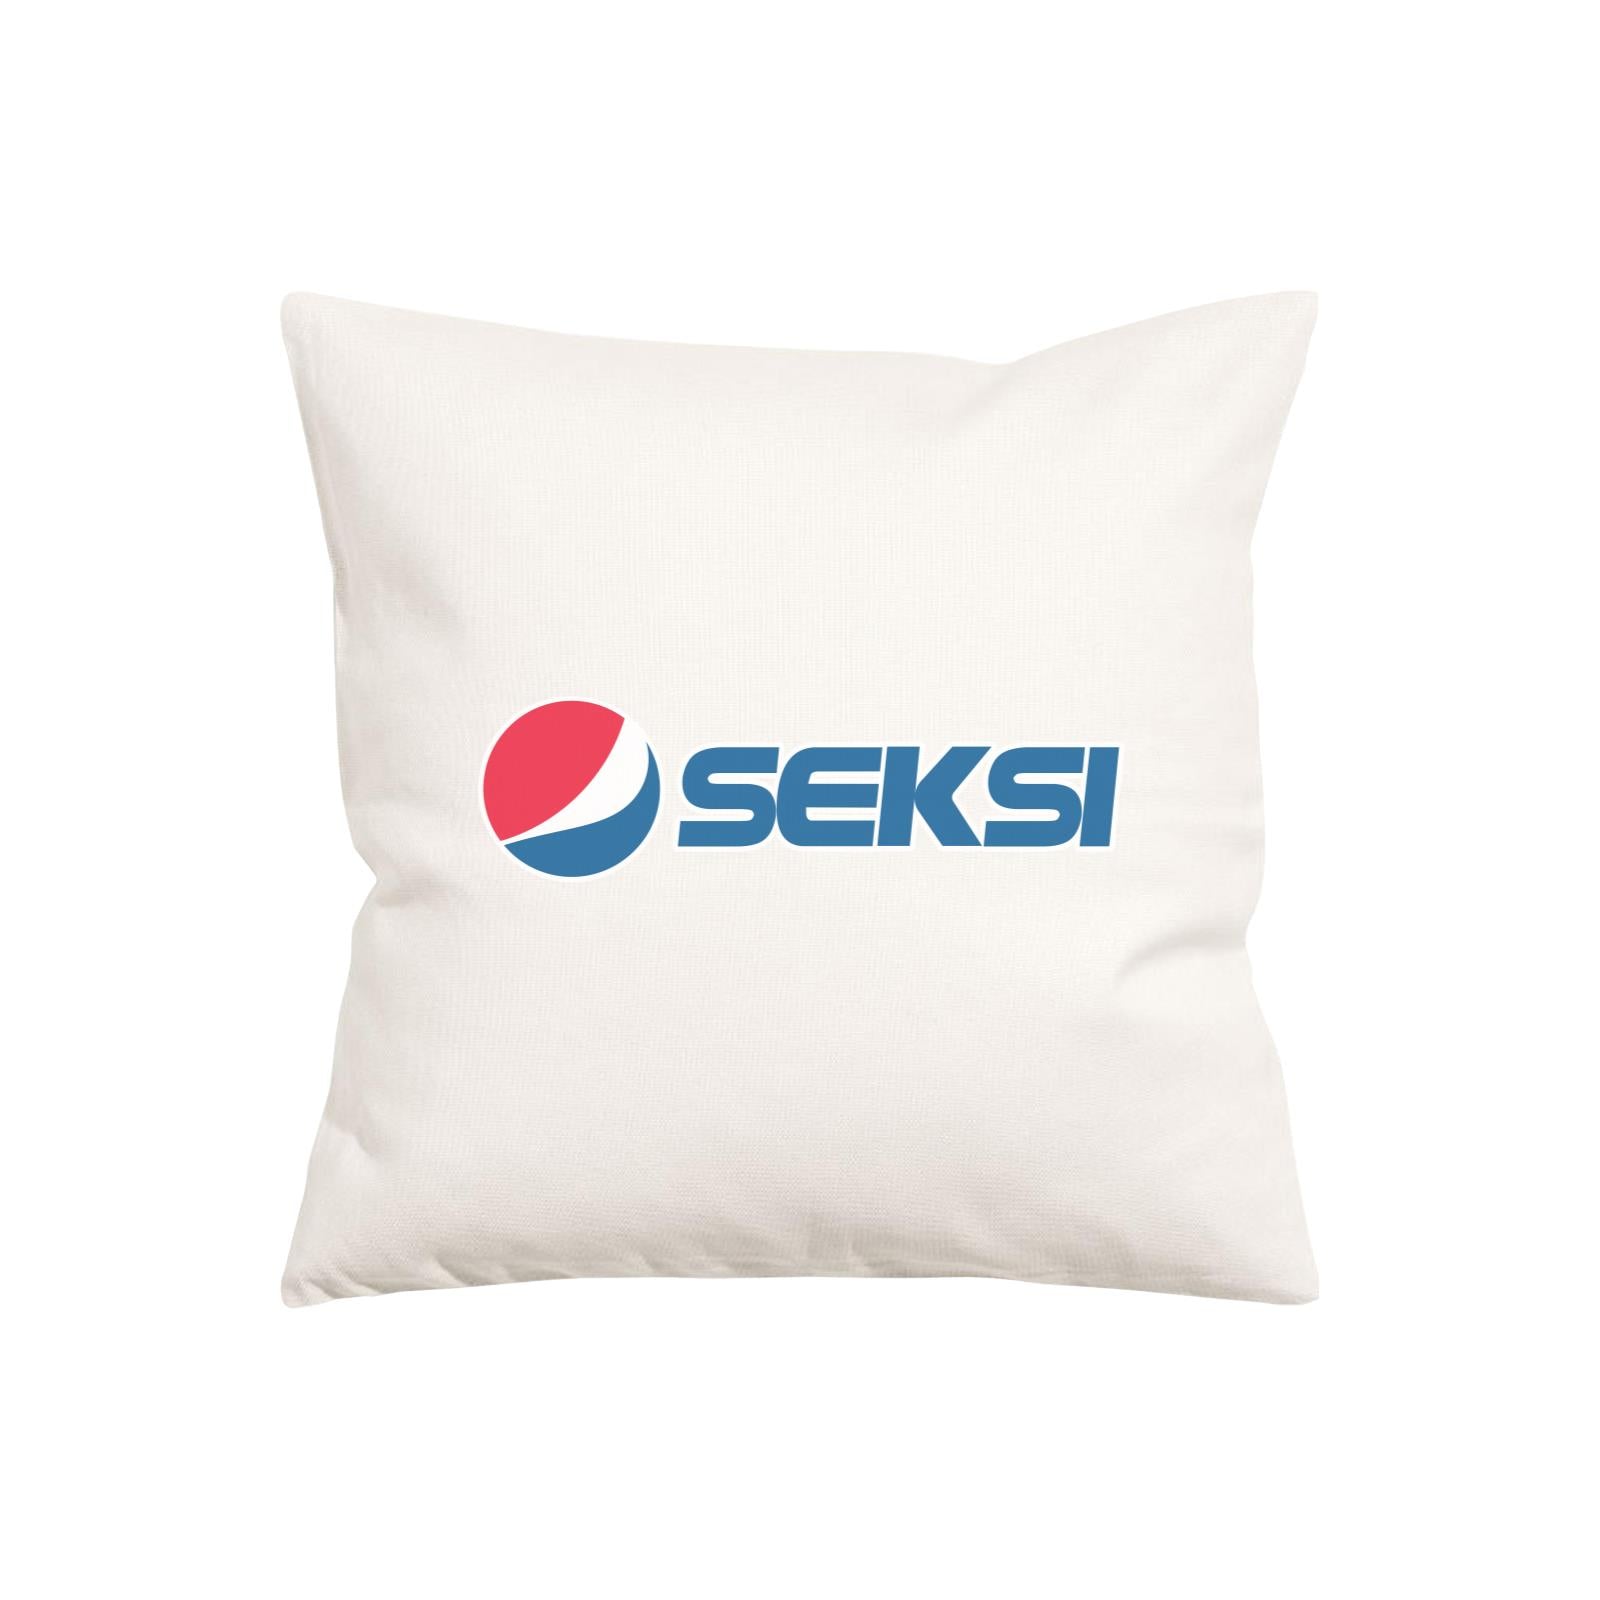 Slang Statement Seksi Pillow Cushion